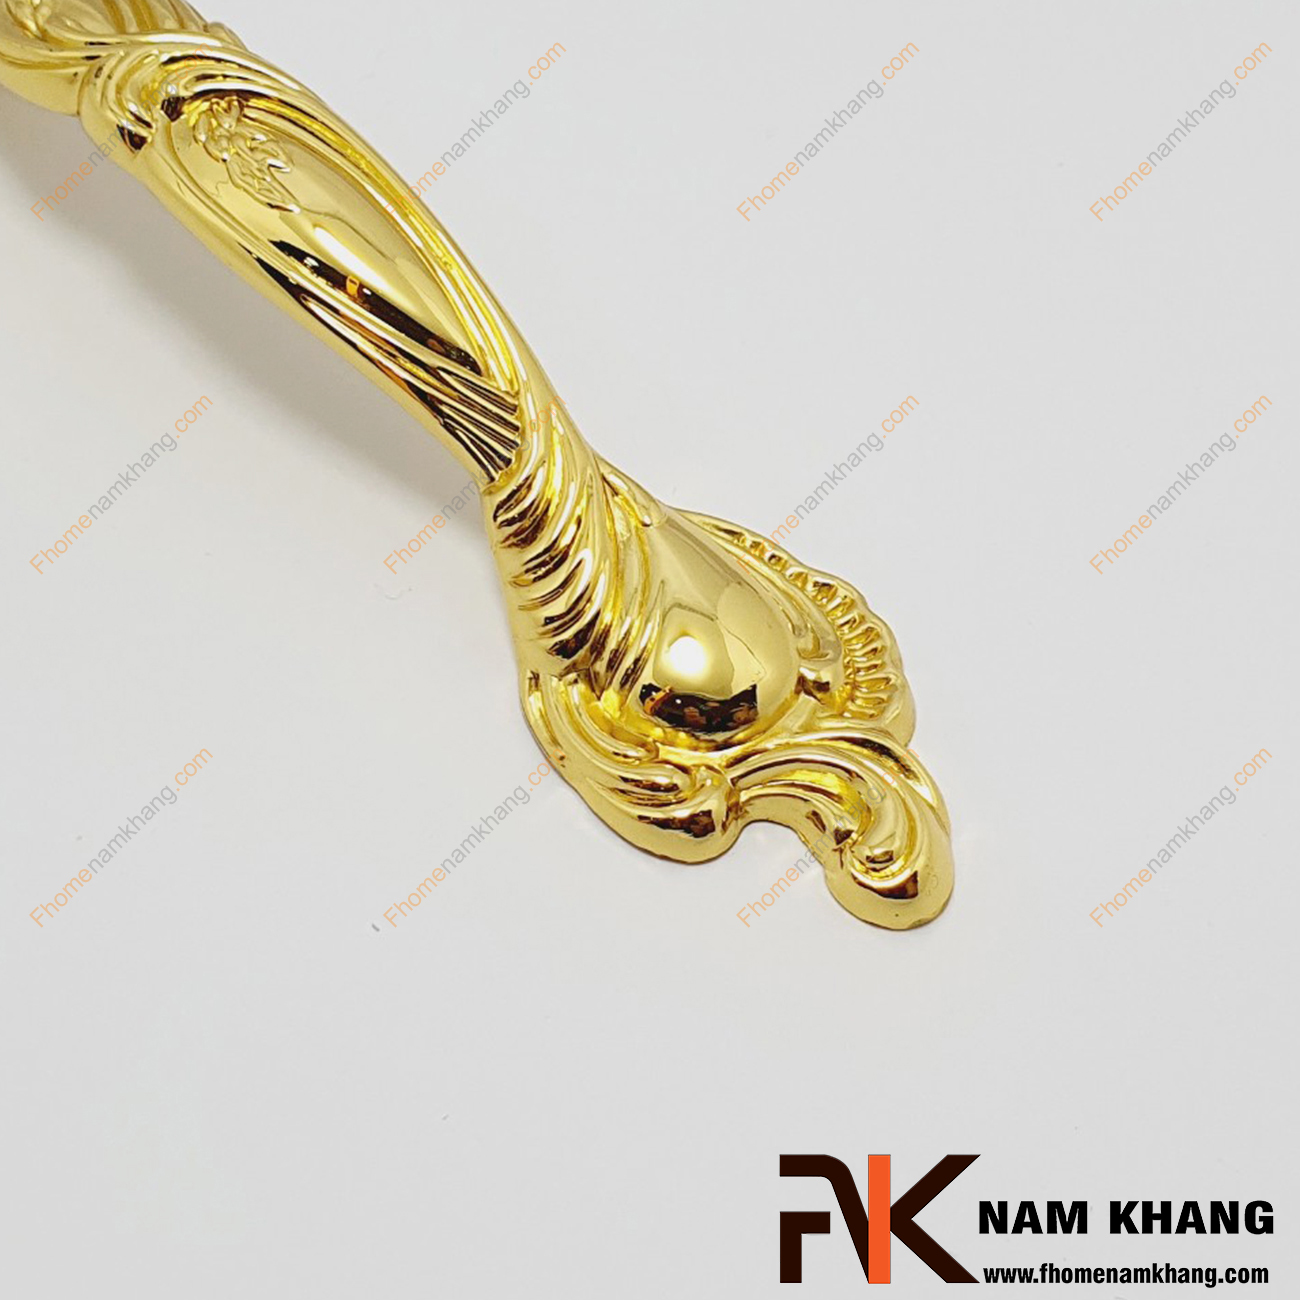 Tay nắm tủ cổ điển màu vàng chanh NK149-VC sản phẩm tay nắm cổ điển sử dụng họa tiết hoa đối xứng với màu vàng bóng ấn tượng.